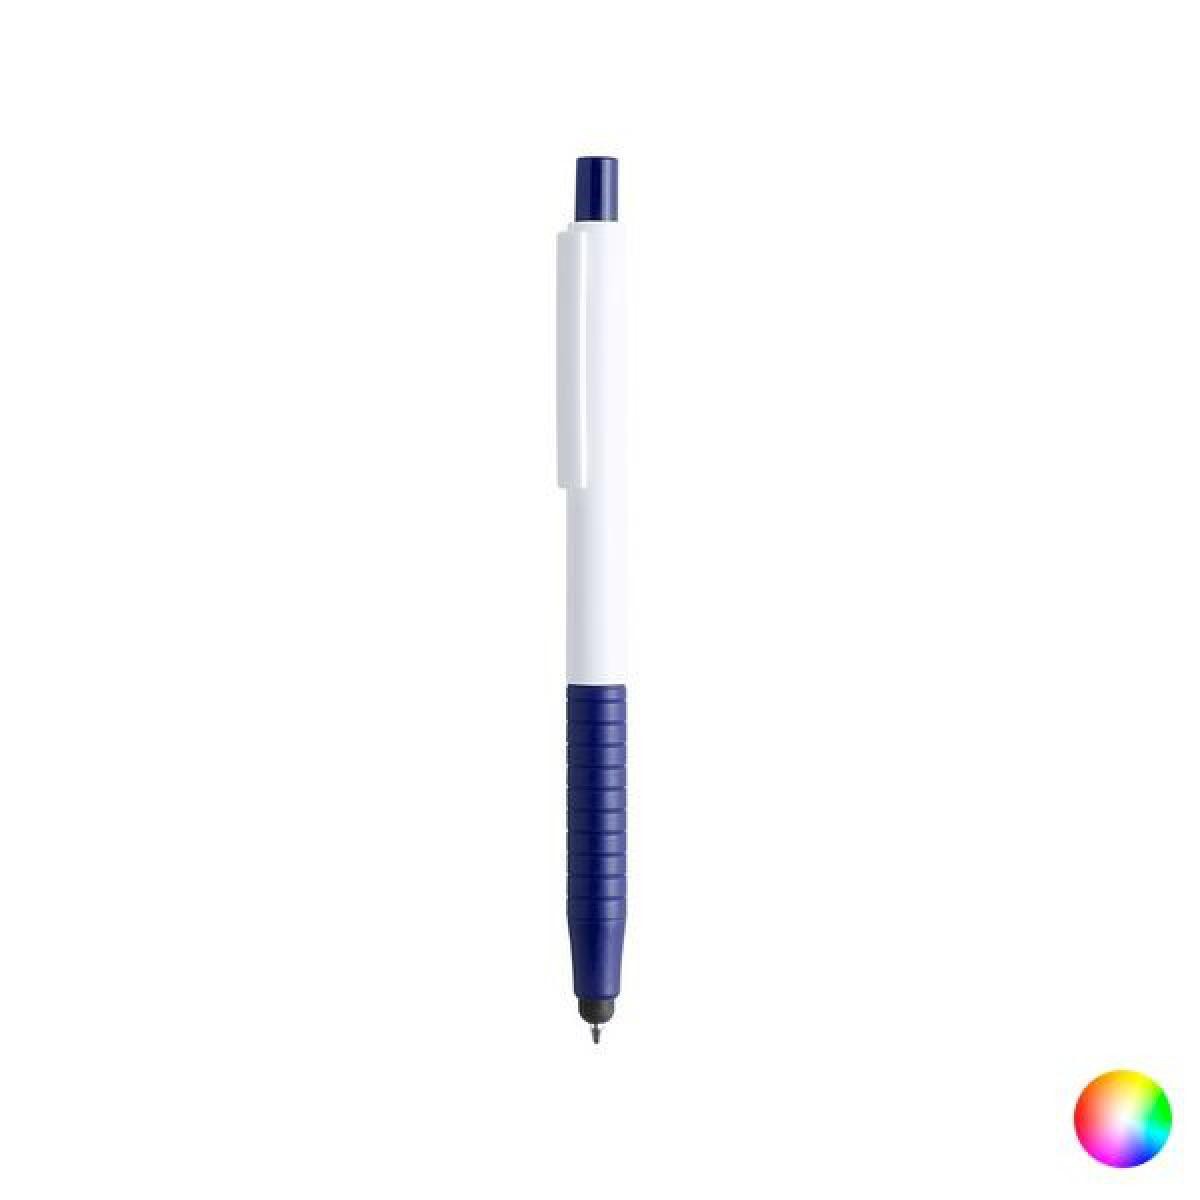 Totalcadeau - Stylo bleu design avec stylet tactile - Stylos bille pointe moyenne Bleu rétractable Couleur - Bleu pas cher - Accessoires Bureau